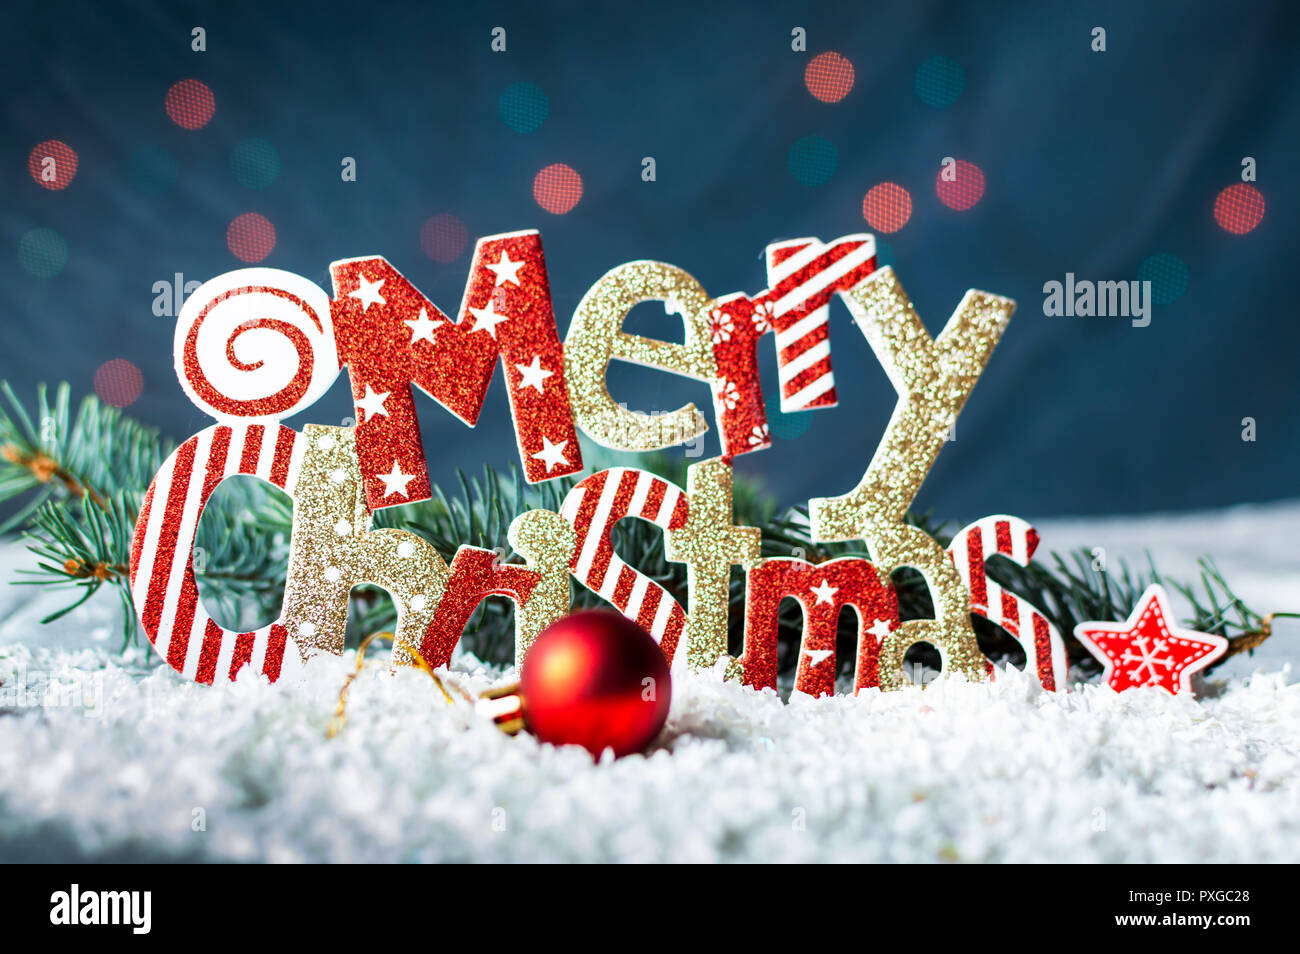 Feliz Navidad tarjeta de fondo festivo, vacaciones de invierno Foto de stock